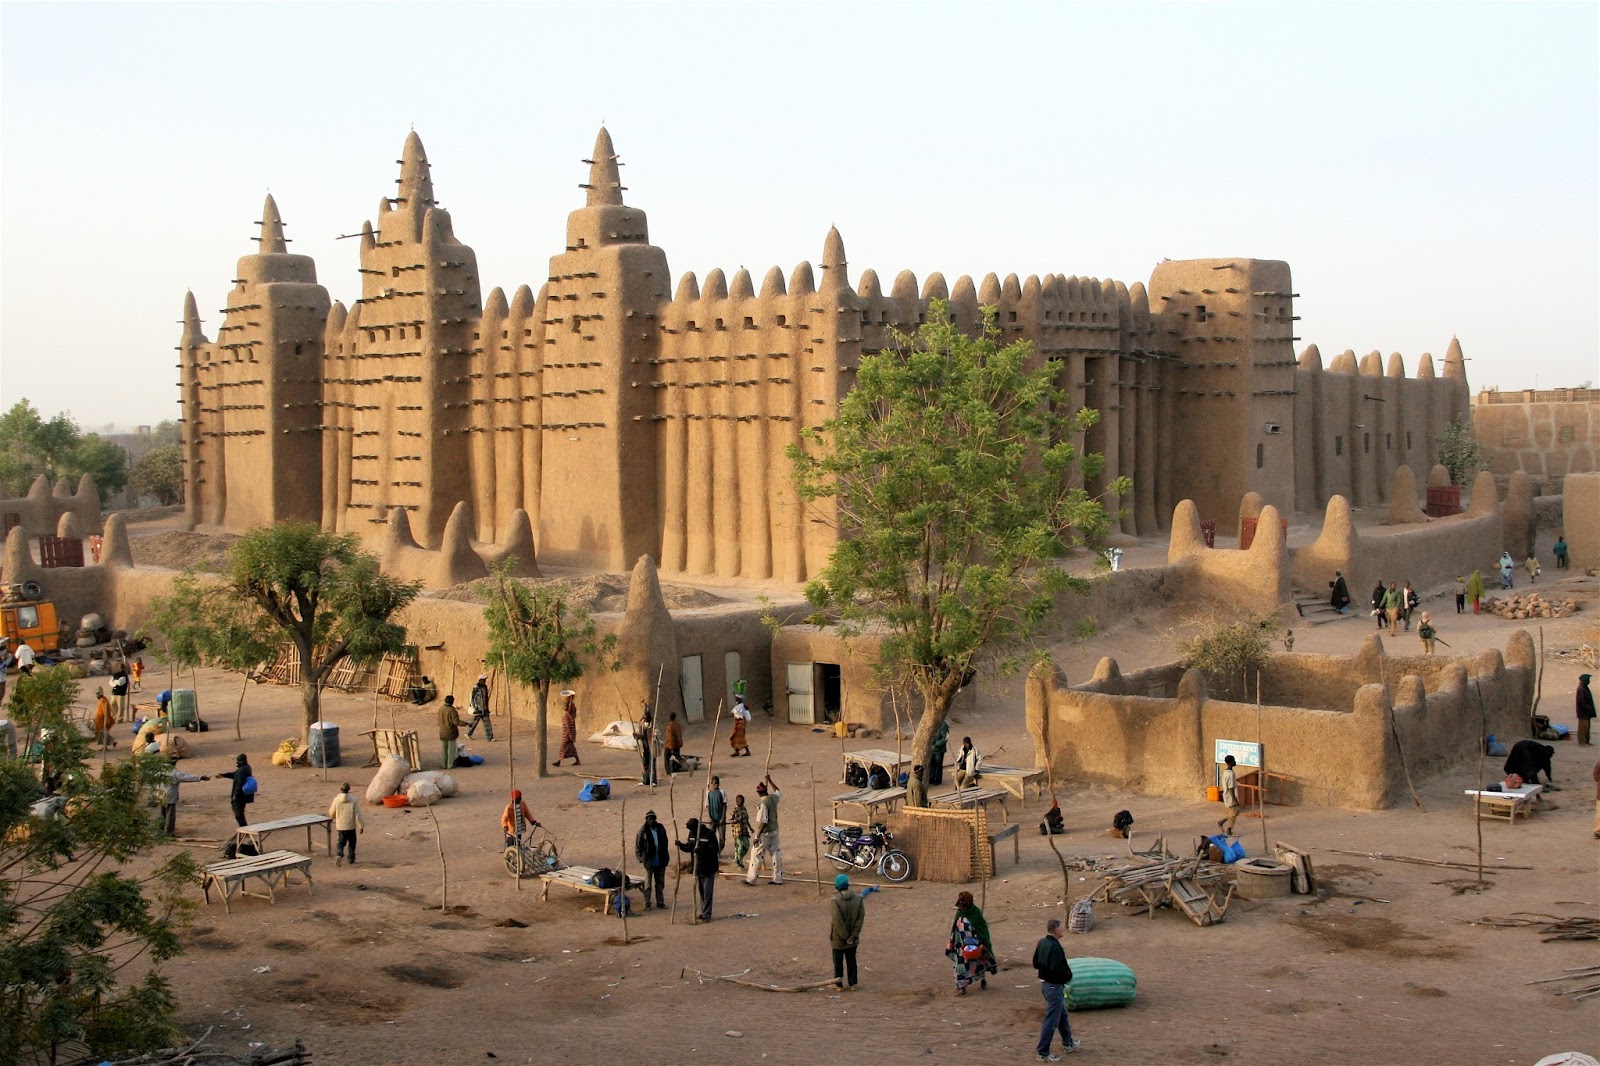 アフリカの城、メチャメチャバカにされてしまう…  [462275543]\n_1